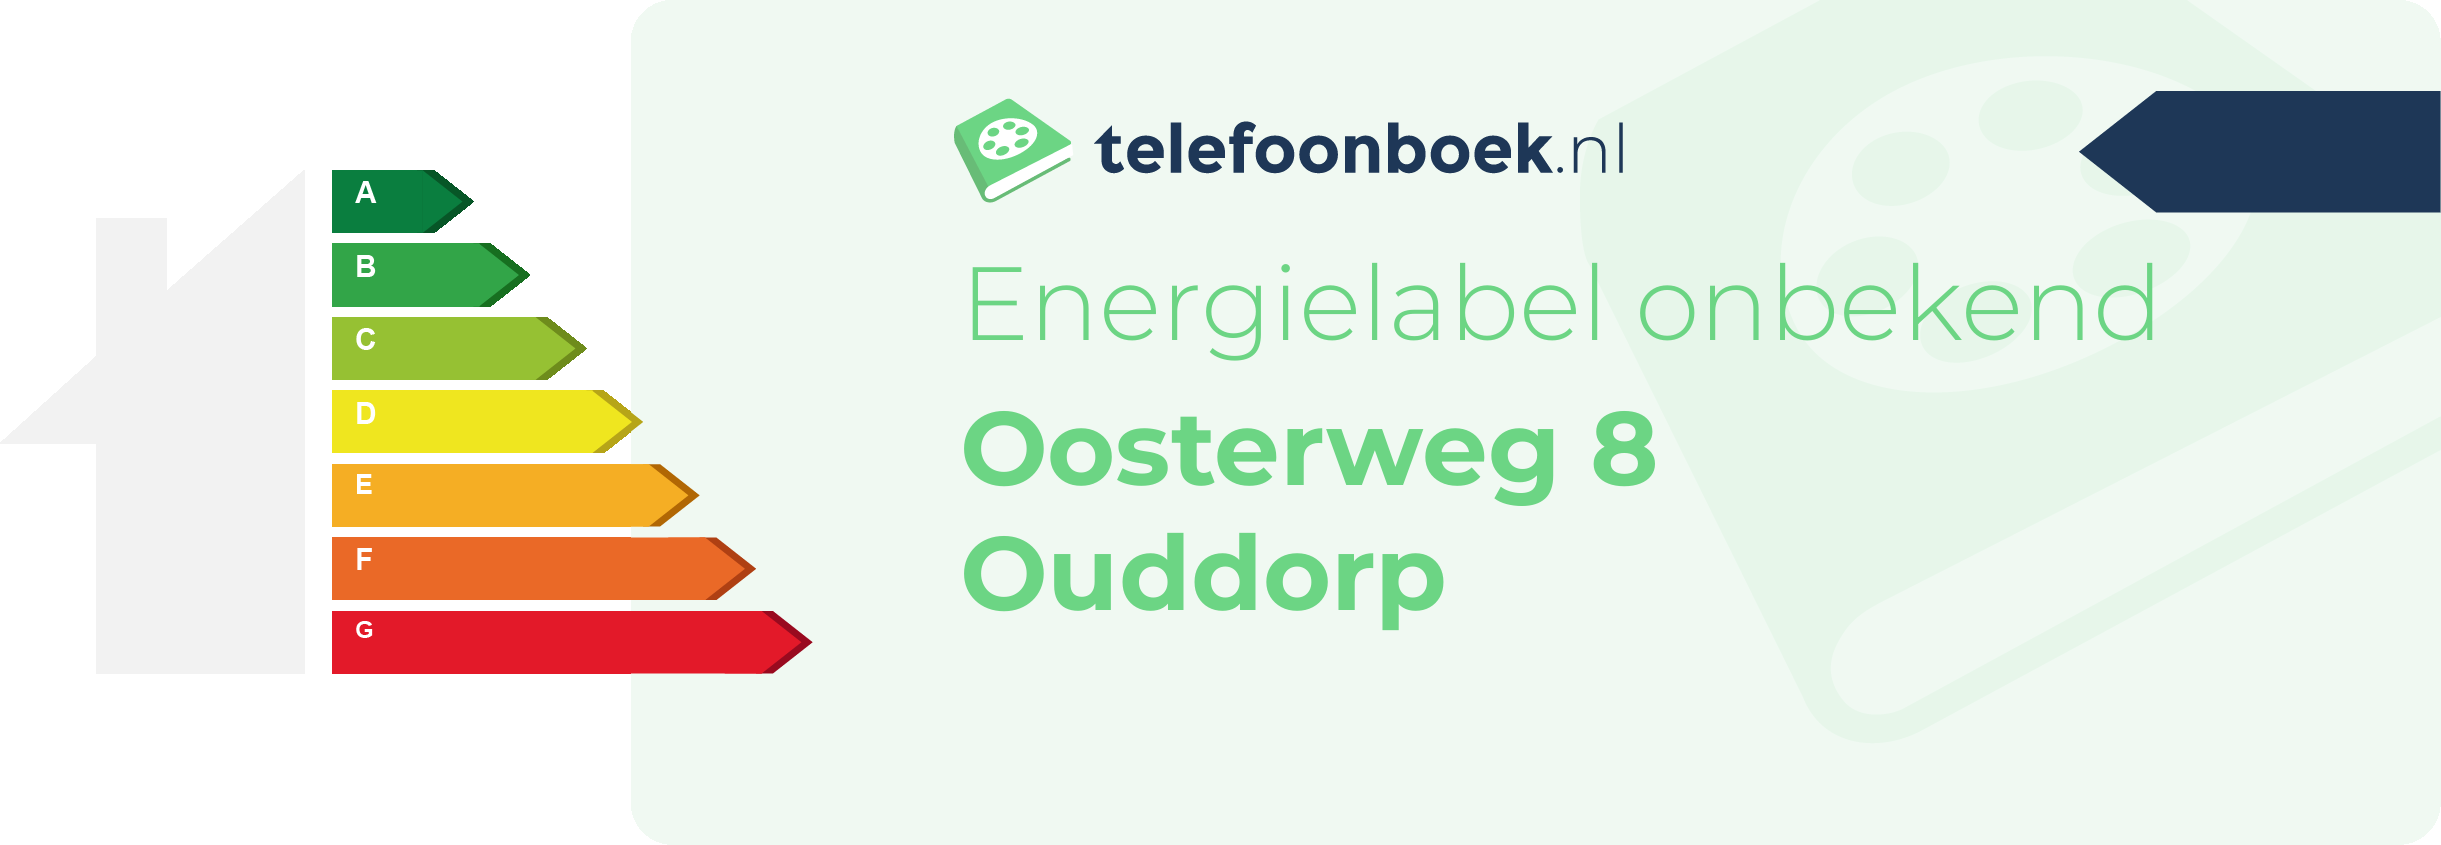 Energielabel Oosterweg 8 Ouddorp